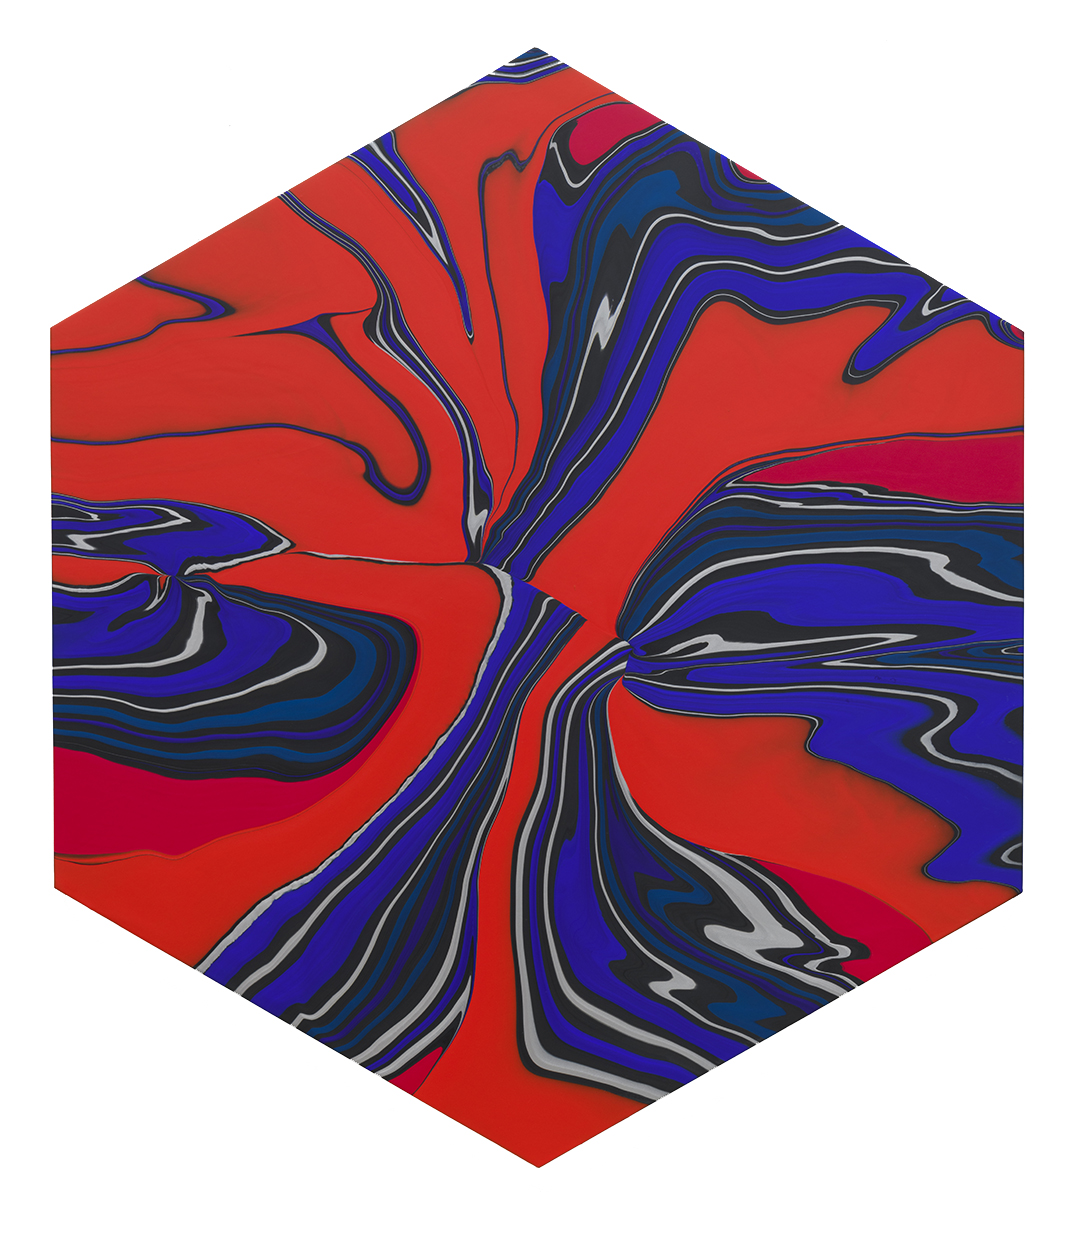 Geodynamics 1214, Acrylic on canvas over wood, 2020